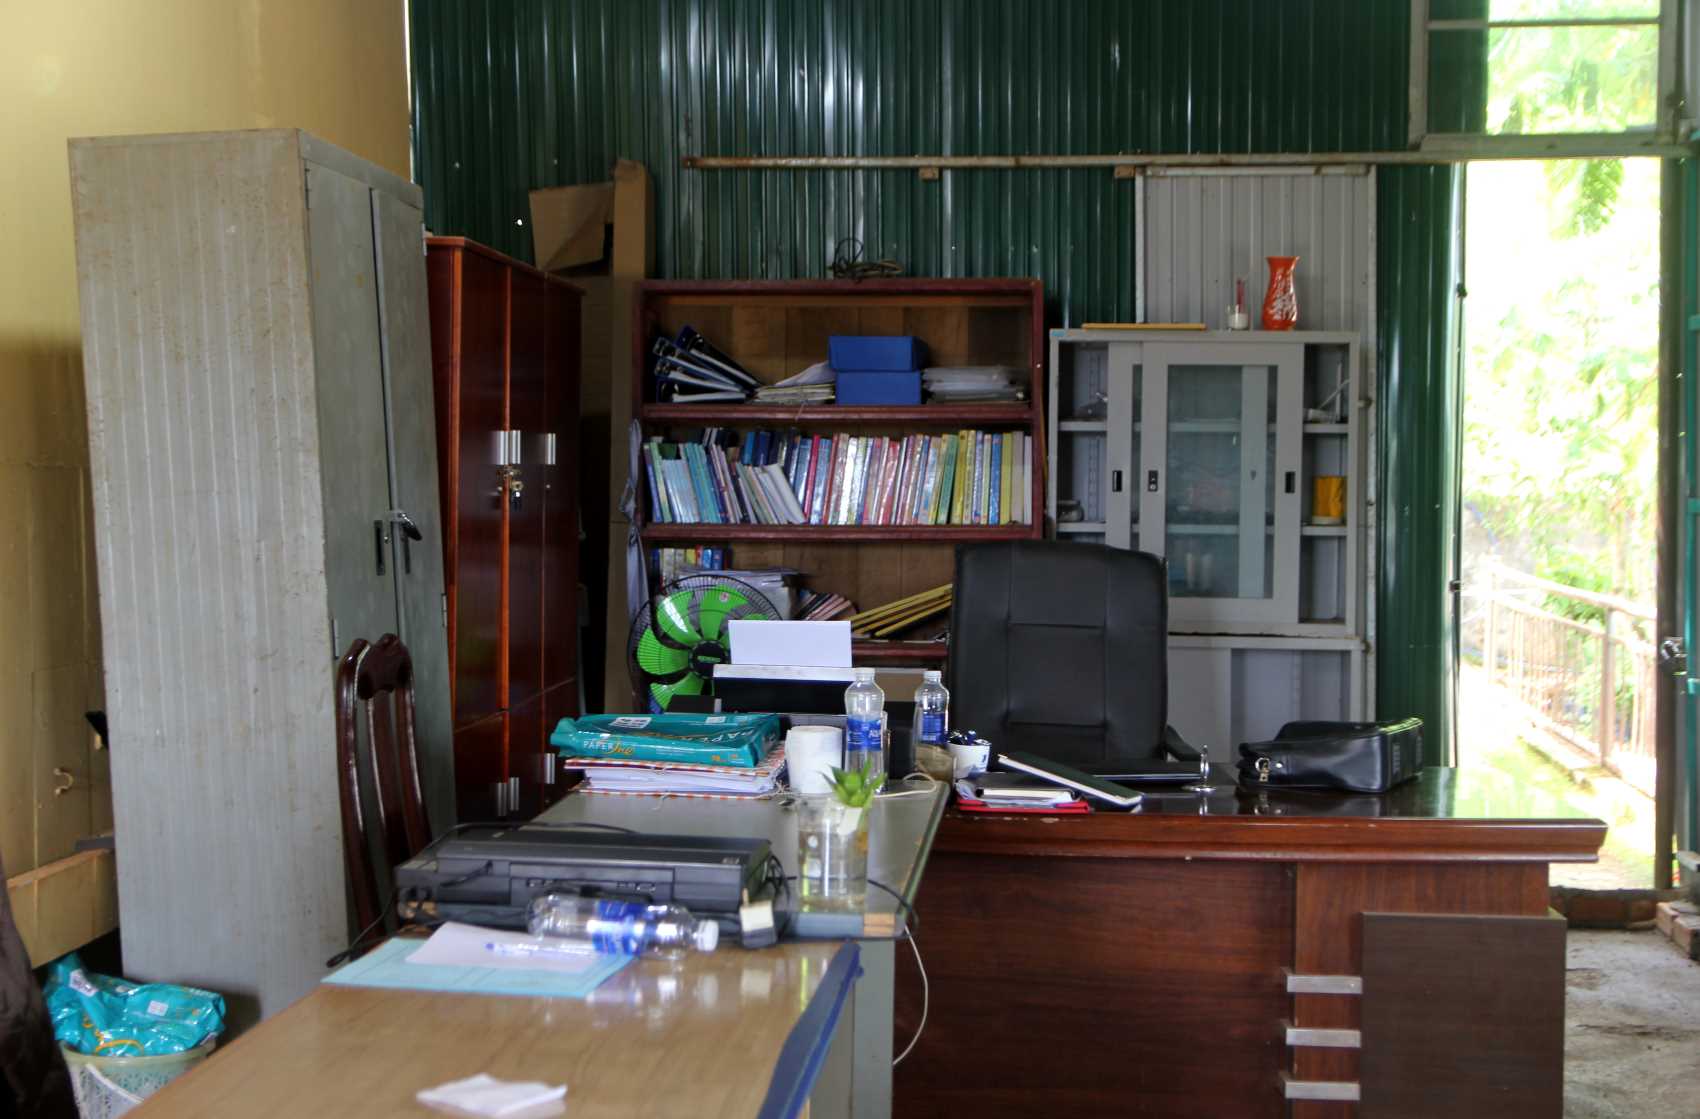 Trong phòng làm việc ở Trung tâm Giáo dục nghề nghiệp - Giáo dục thường xuyên huyện Đắk Song chỉ có vài tủ để tài liệu sơ sài, không đáp ứng đủ nhu cầu công việc. Ảnh: Bảo Lâm